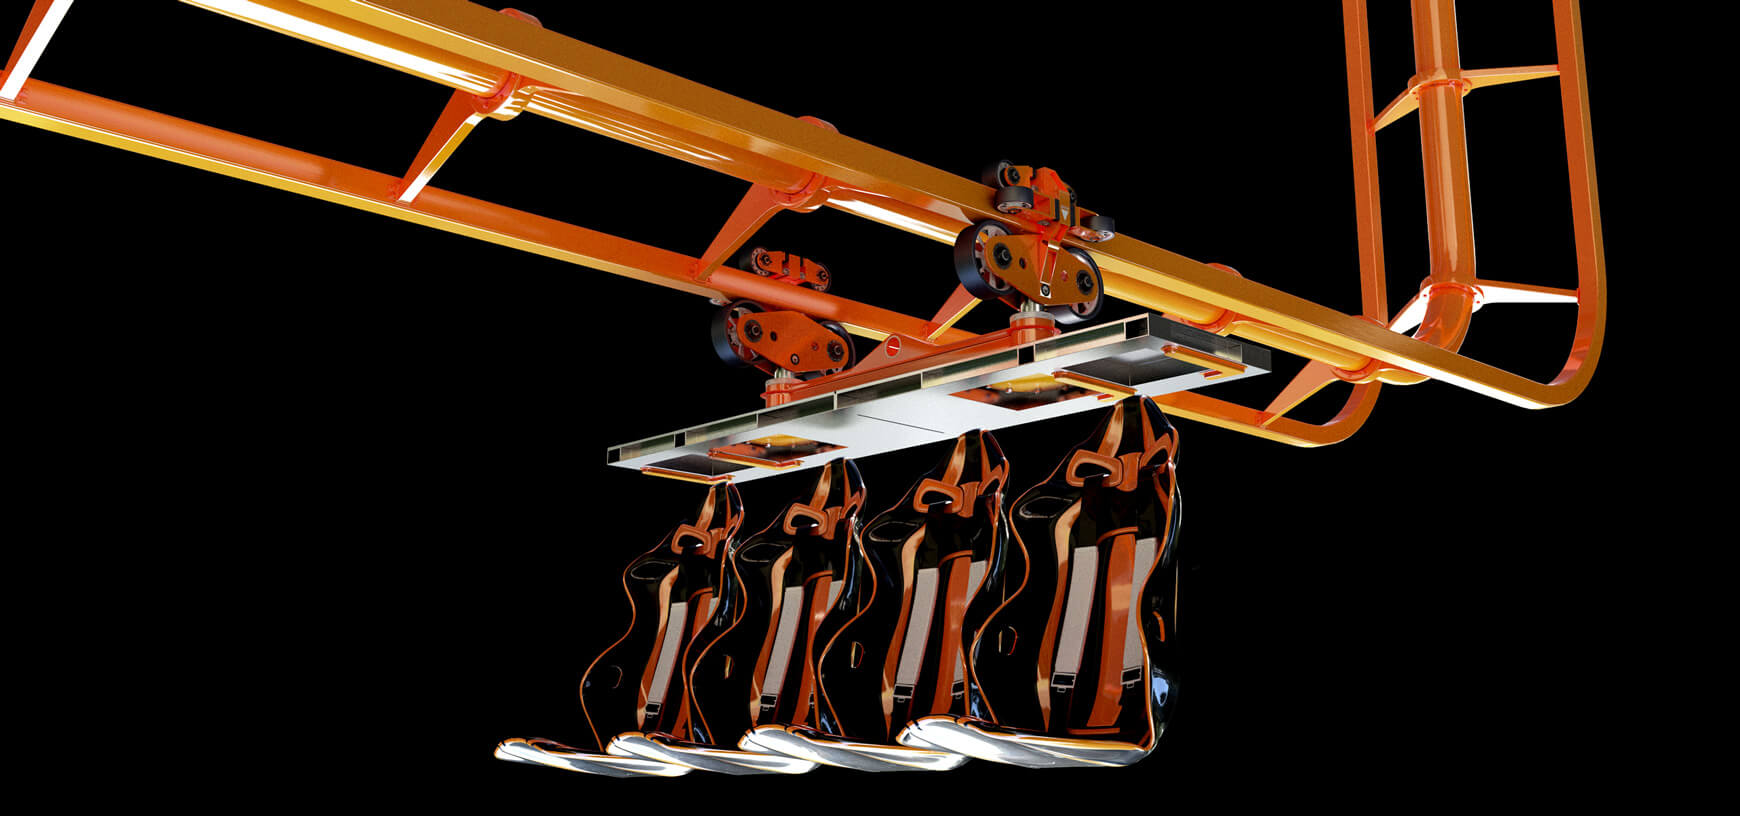 Free Cinema 4D 3D Model Roller Coaster